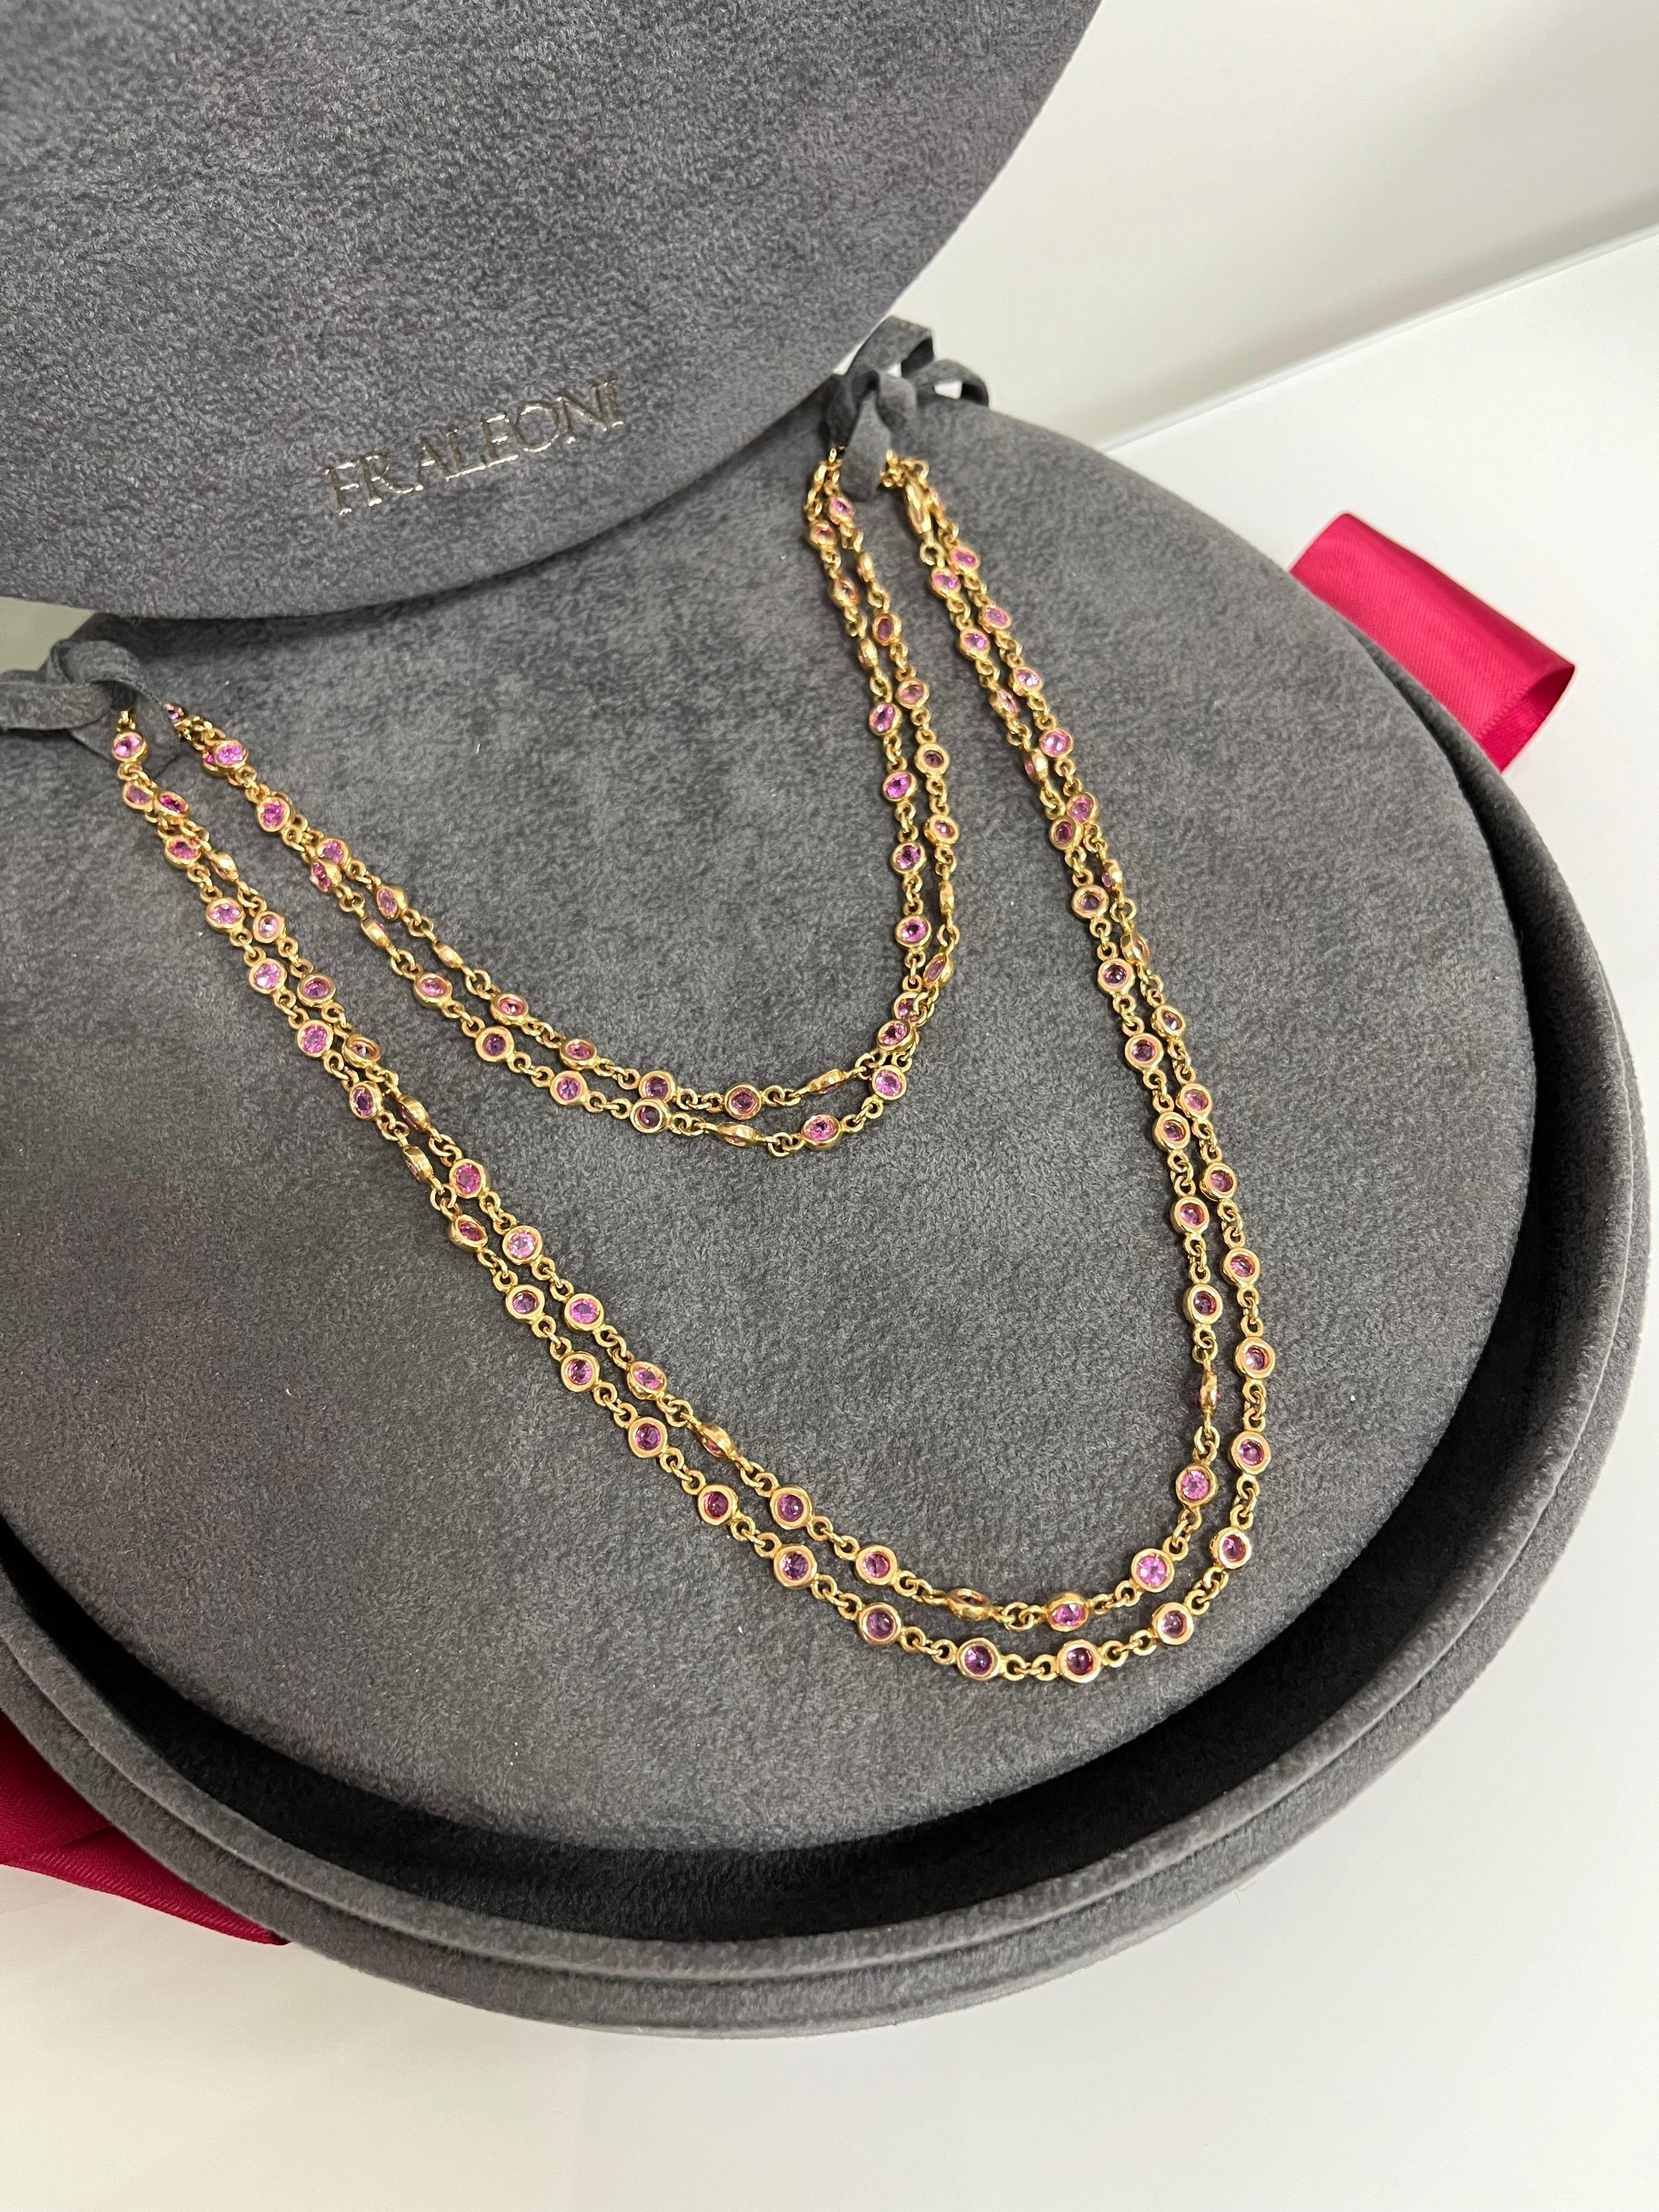 Fraleoni 18 Kt. Rose Gold Pink Sapphires Long Necklace For Sale 2